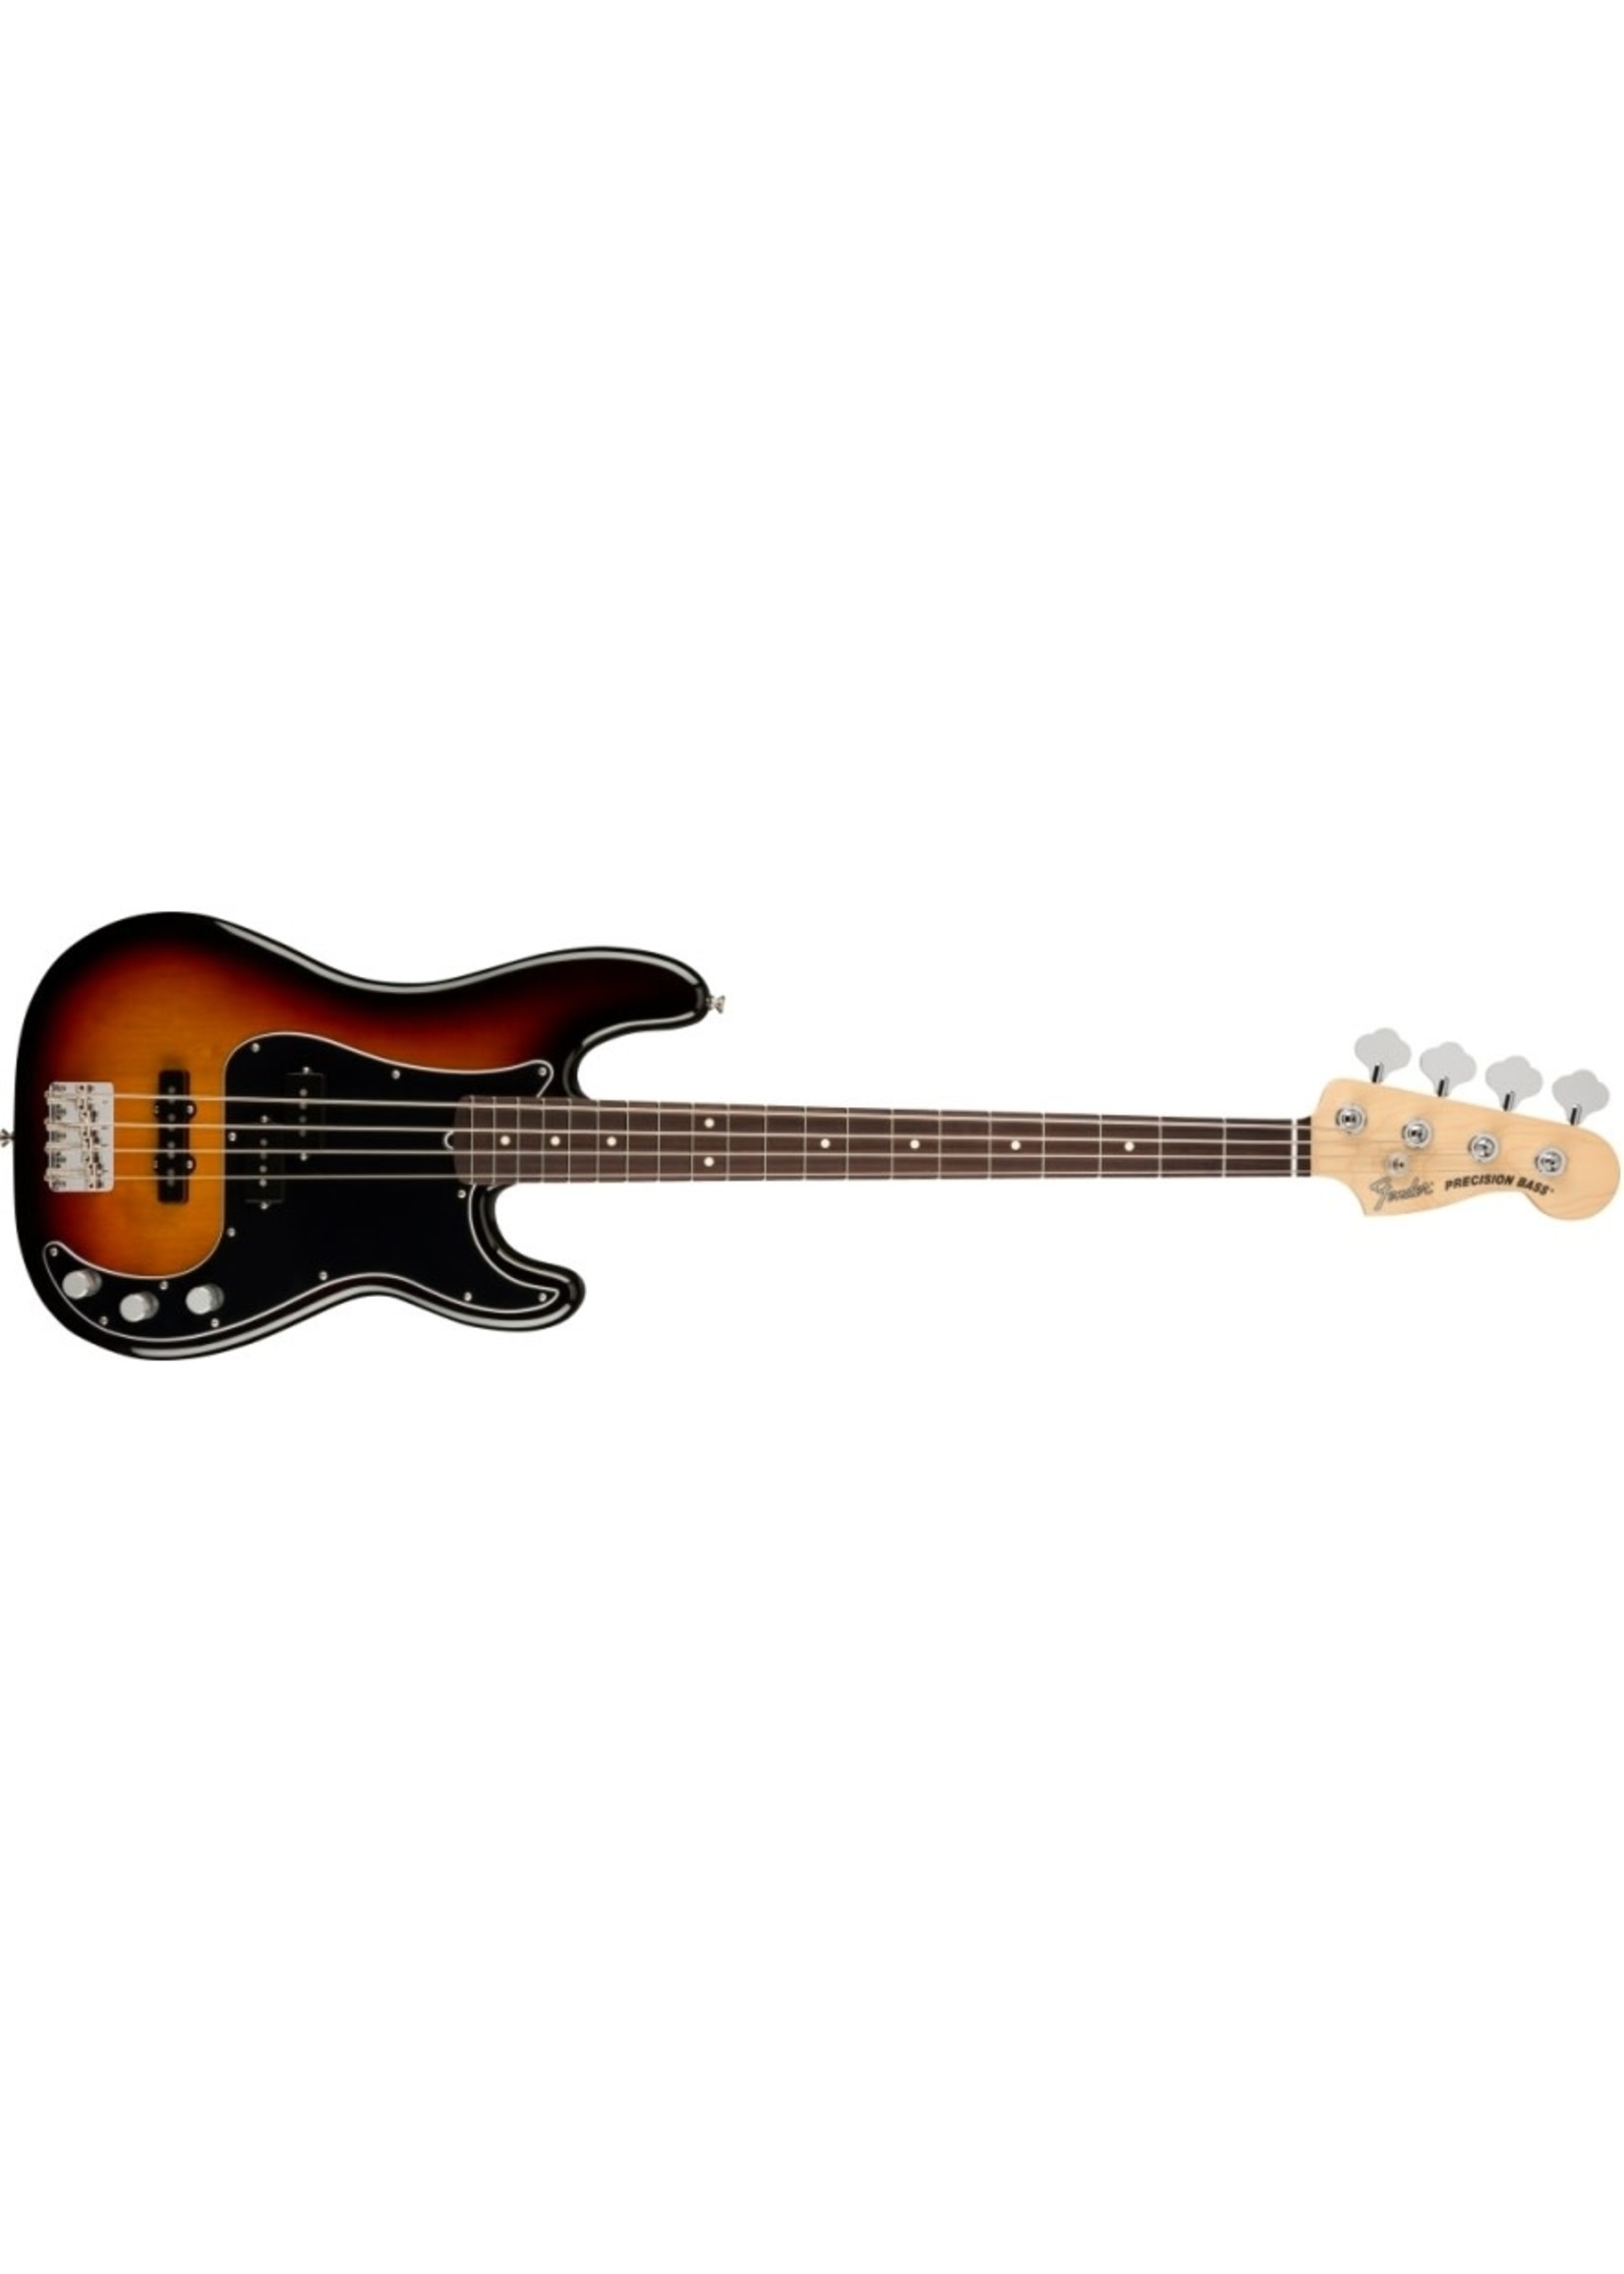 Fender Fender 0198600300 American Performer Precision Bass, Rosewood Fingerboard, 3-Color Sunburst